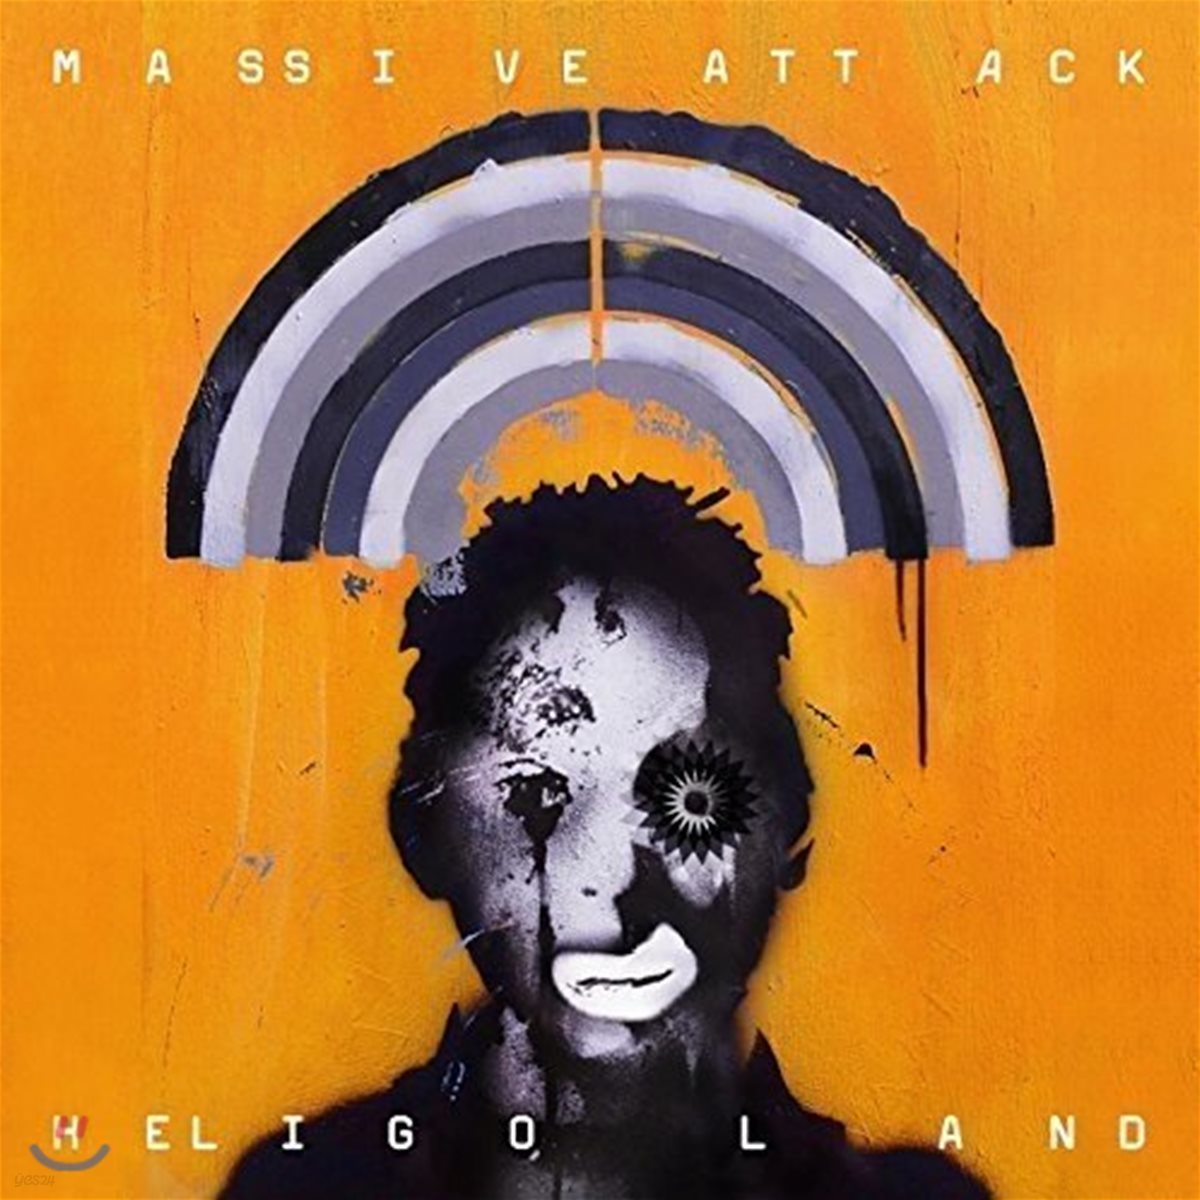 Massive Attack (매시브 어택) - Heligoland